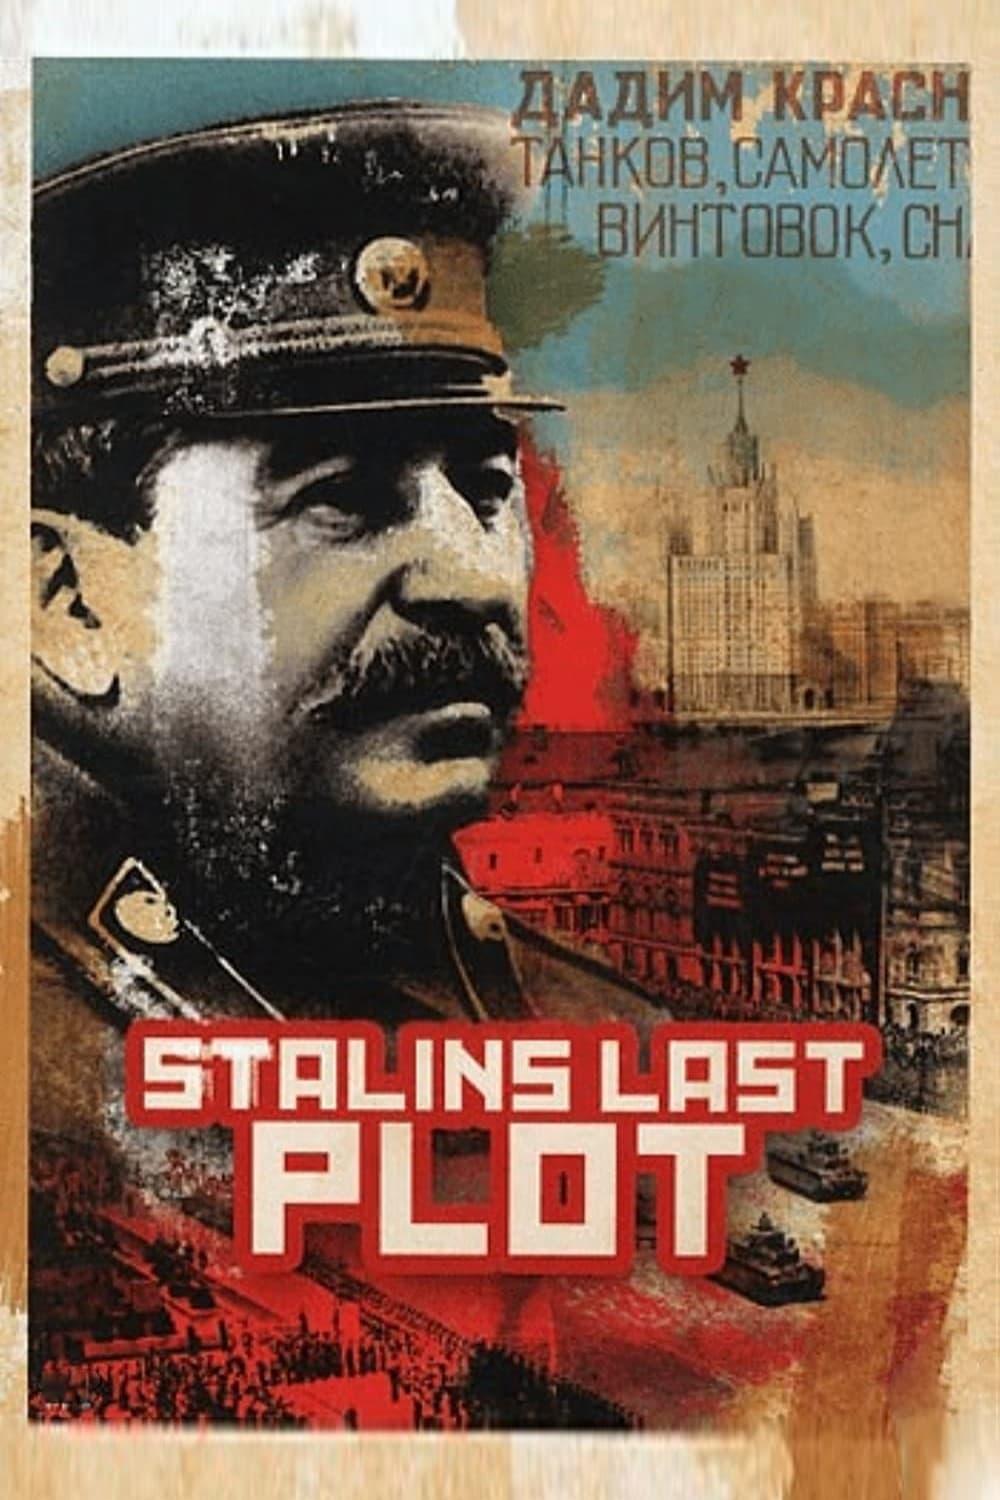 Stalin's Last Plot poster